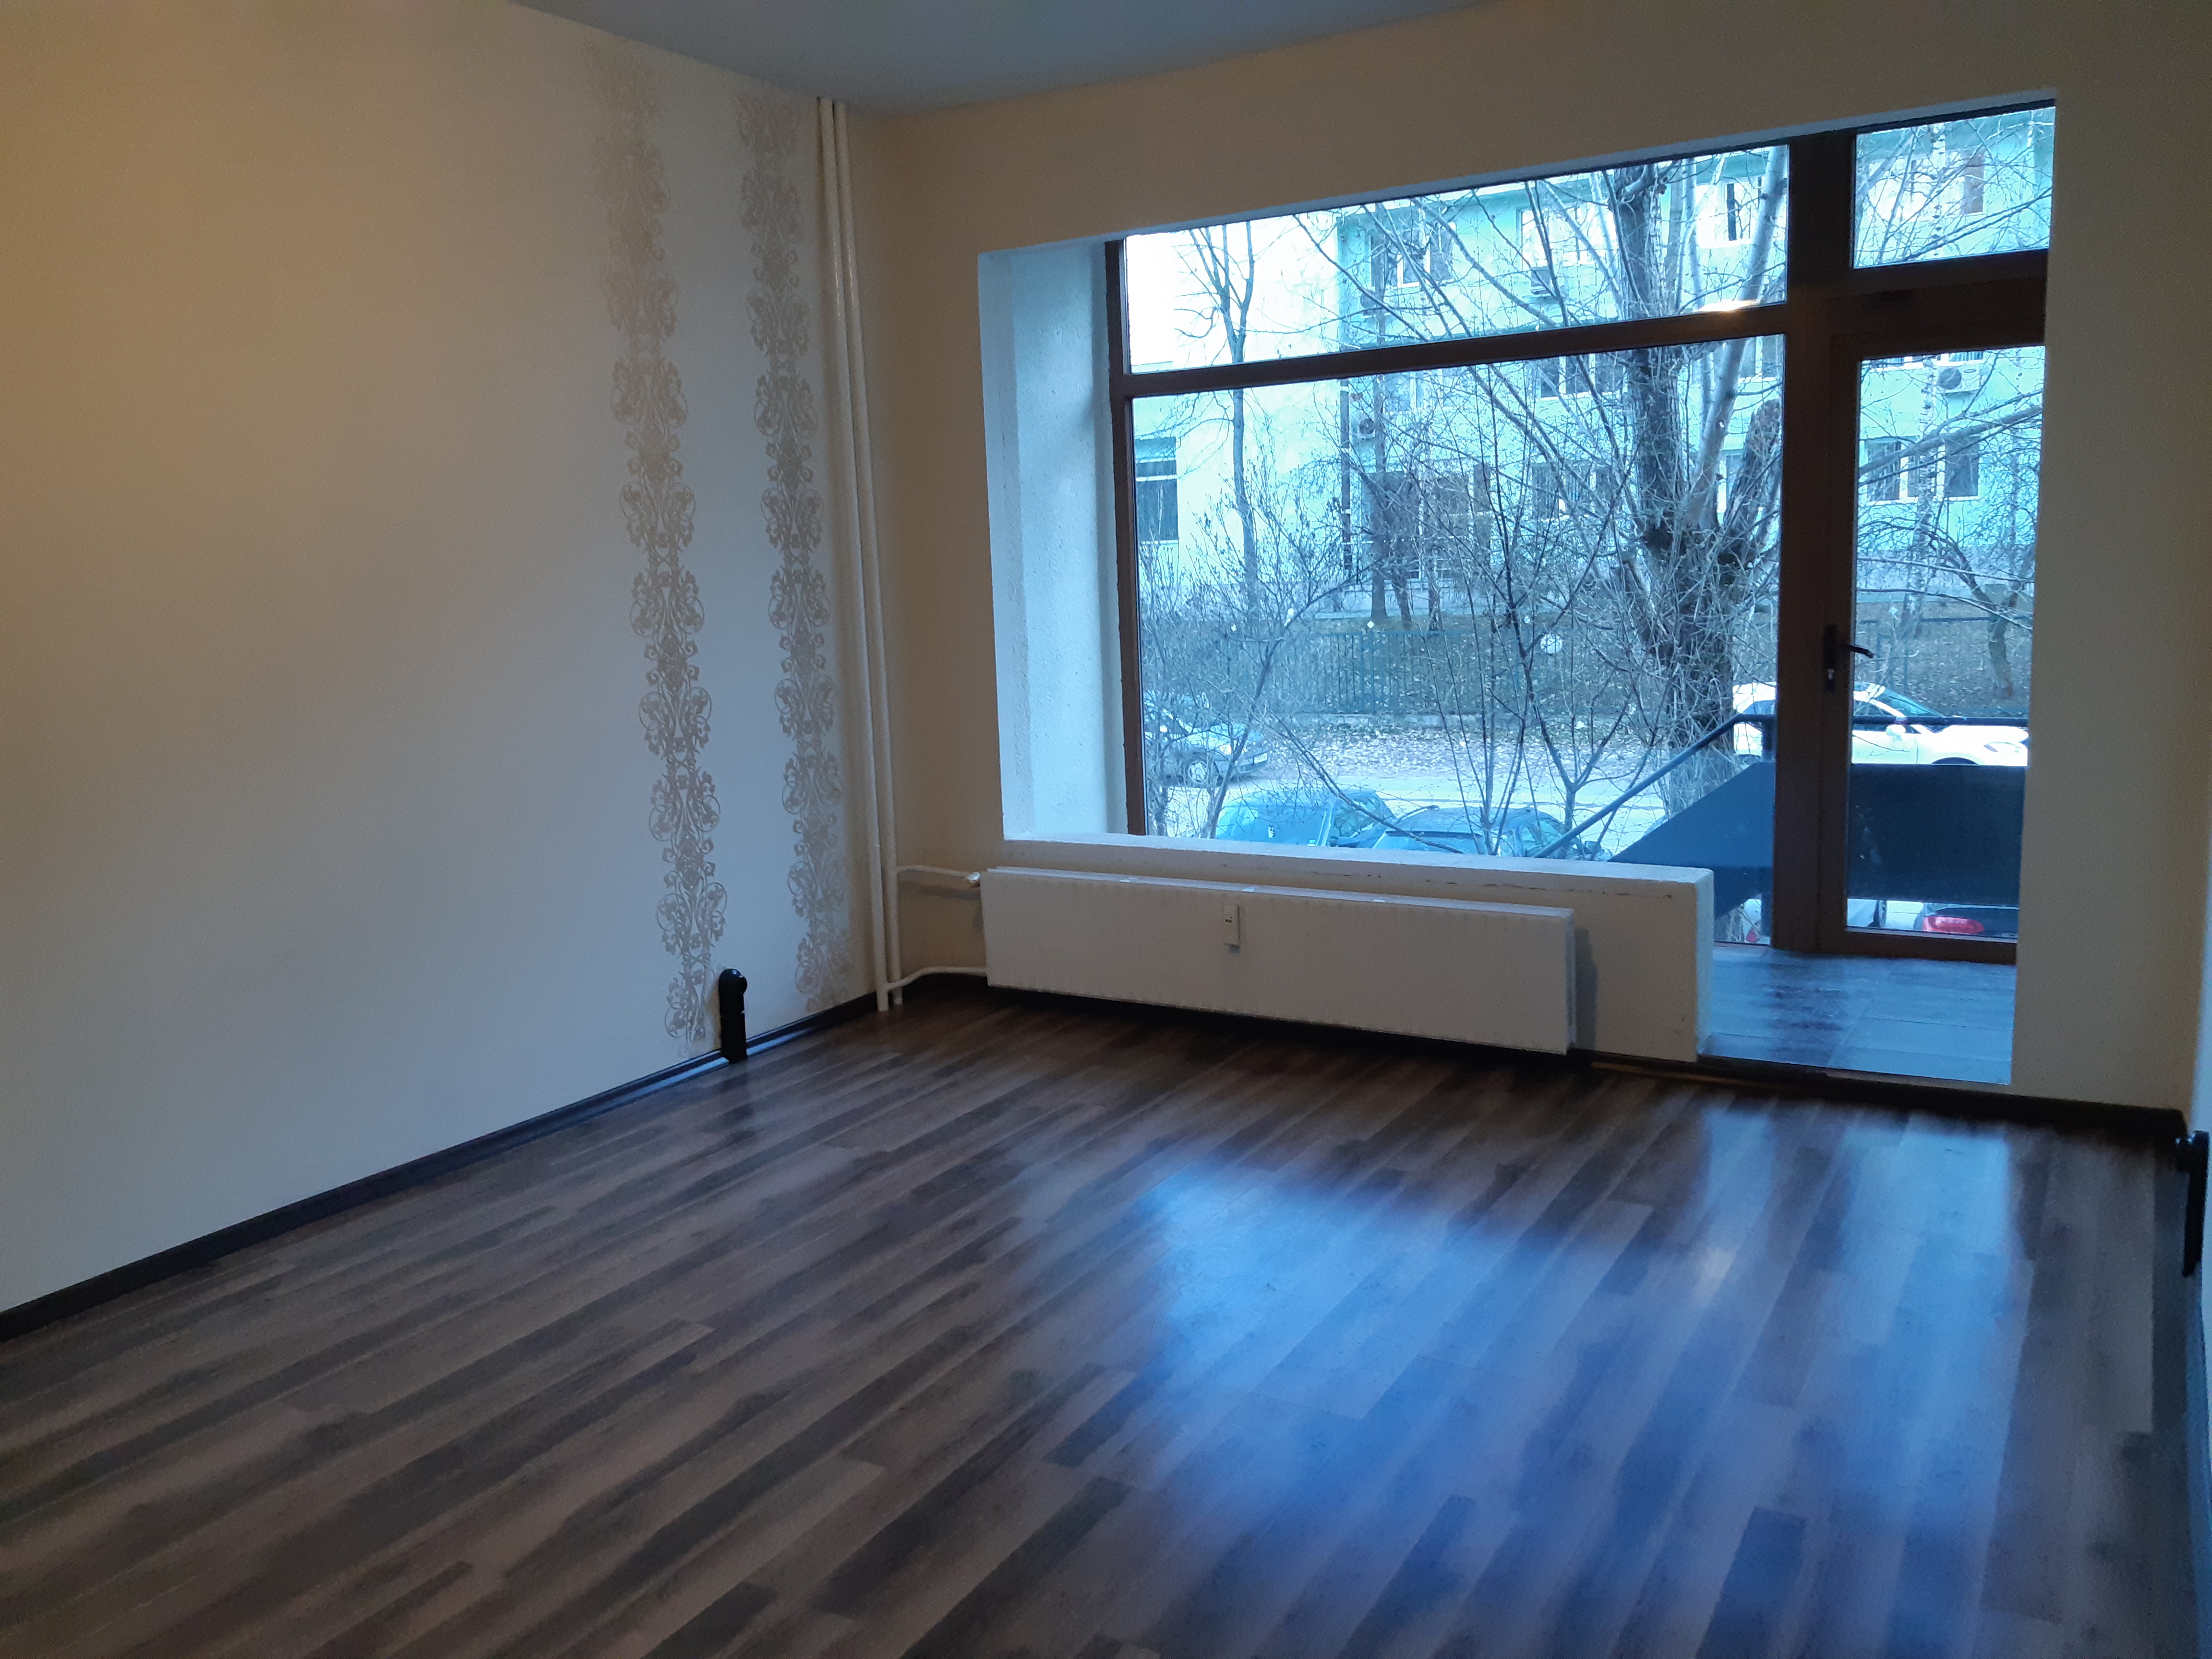 3 стаен апартамент, ж.к. Дървеница, цена 98900 евро- ПРОДАДЕН! - image